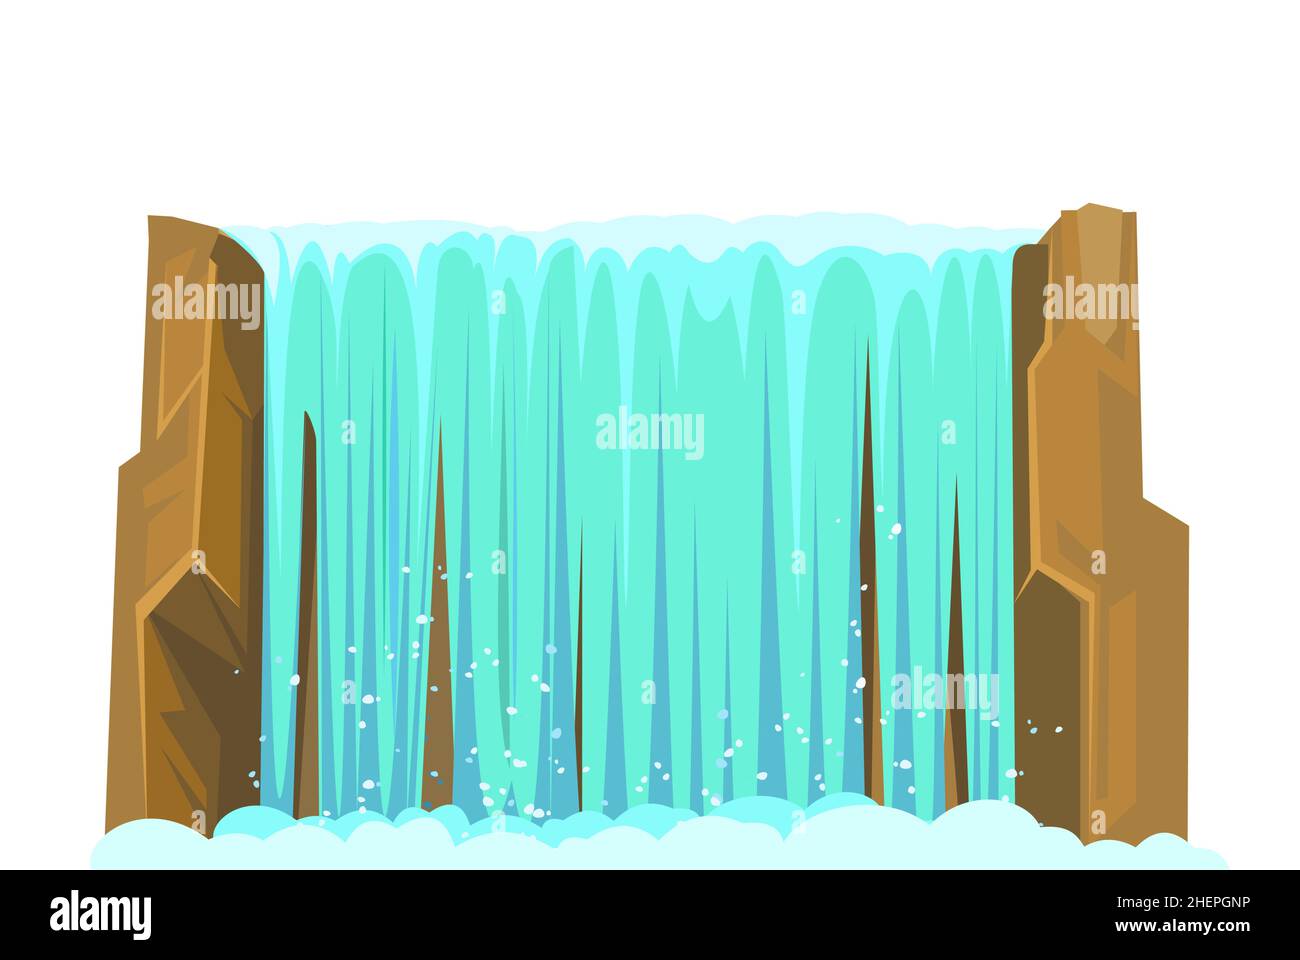 Wasserfall zwischen Felsen. Kaskade schimmert nach unten. Fließendes Wasser. Glatte Wasserwand. Cooler Cartoon-Style. Objekt auf weißem Hintergrund isoliert. Vektor Stock Vektor